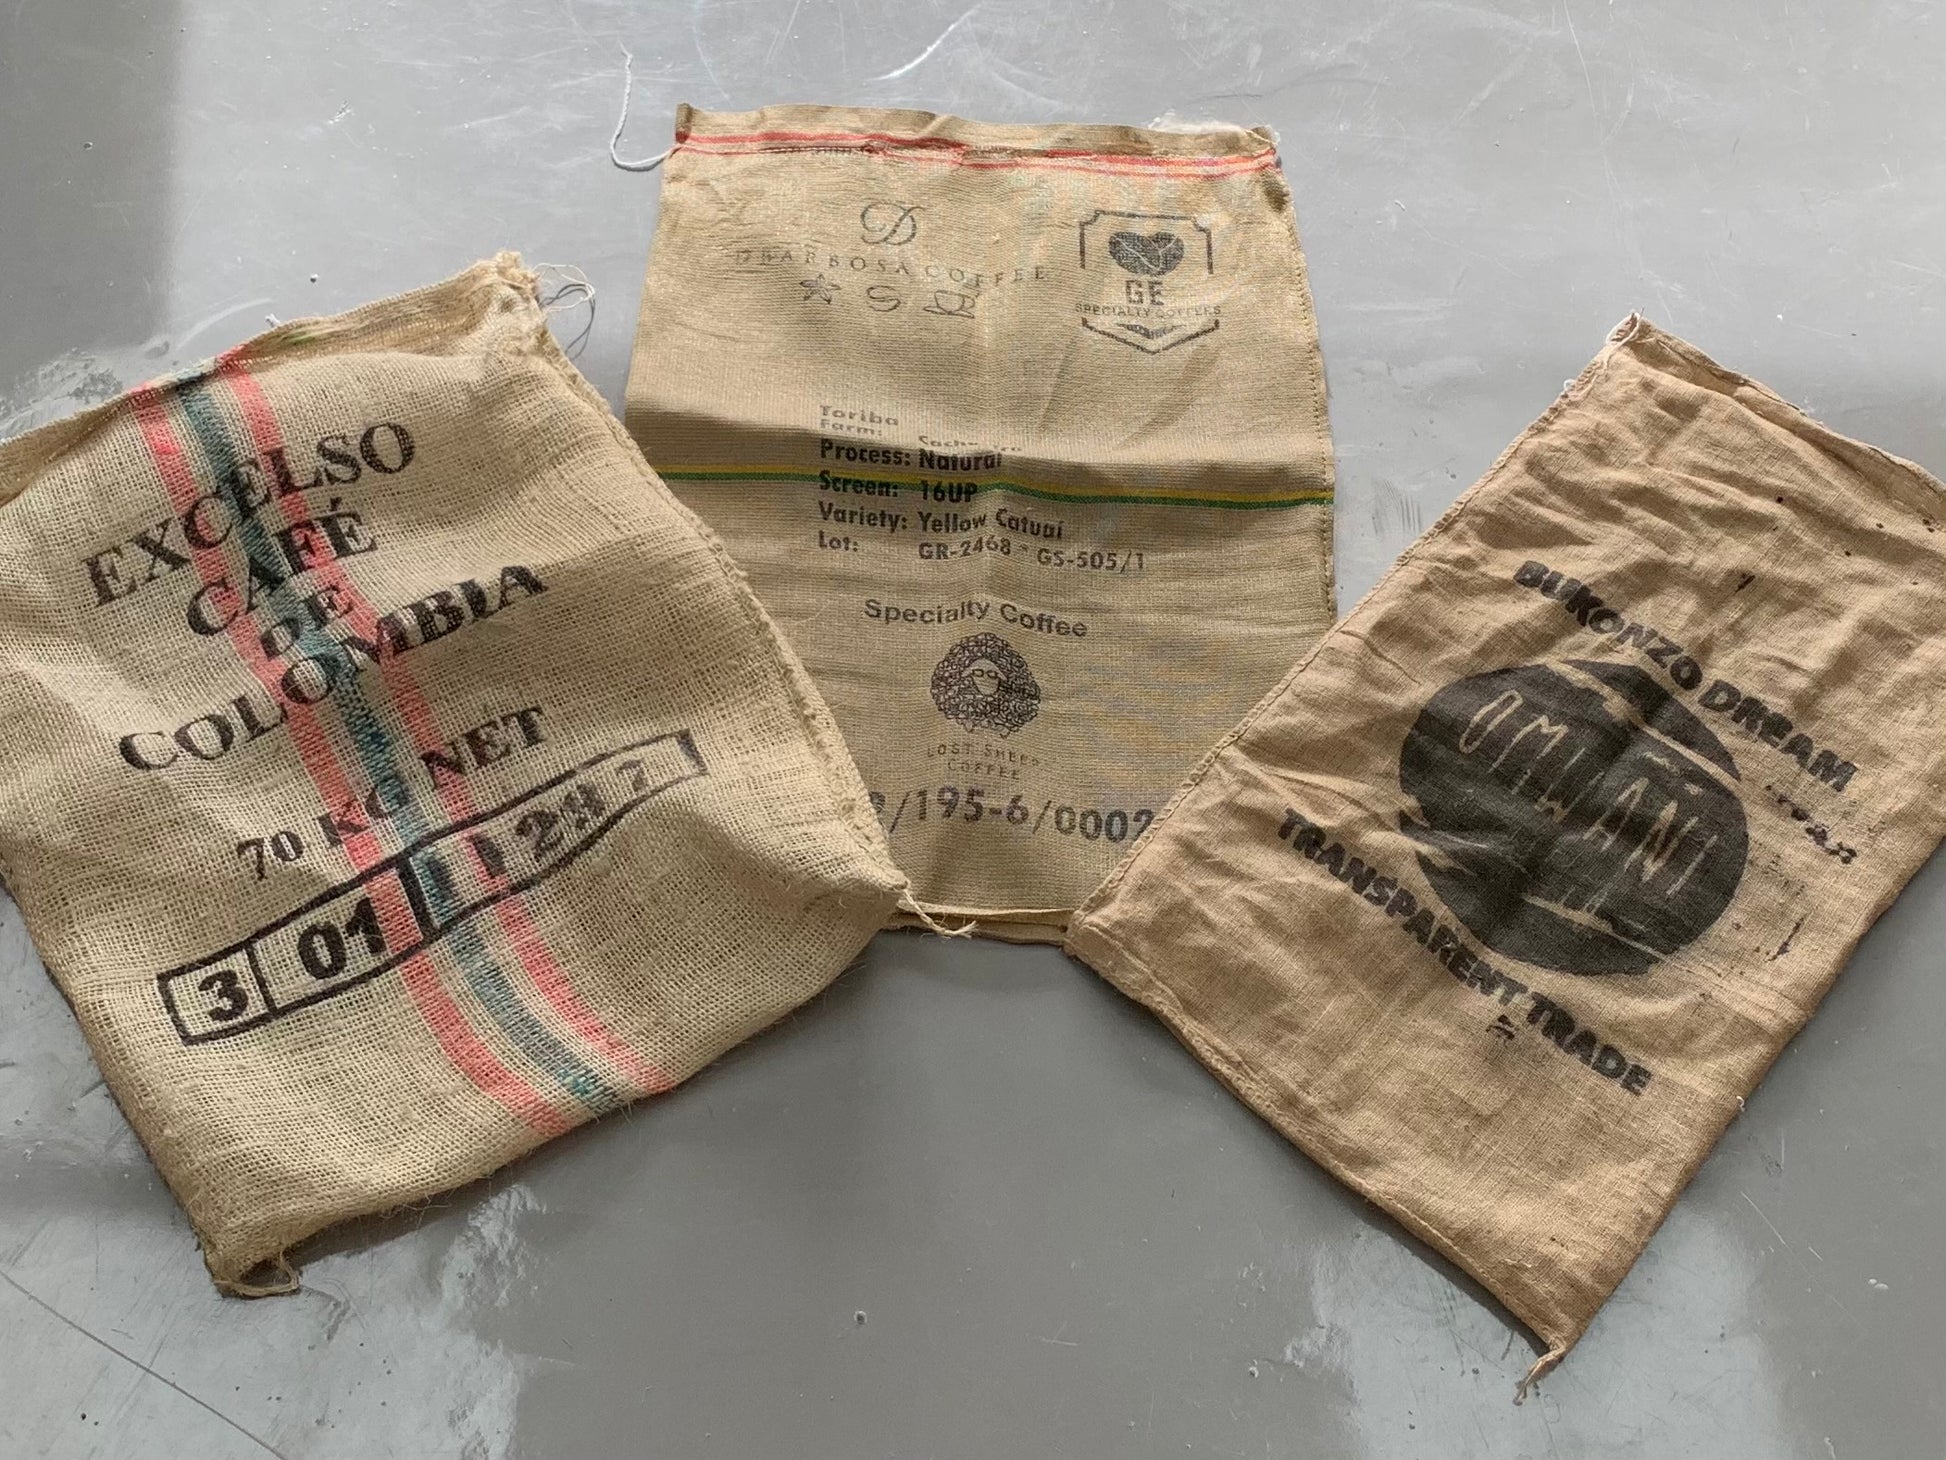 Used coffee sacks